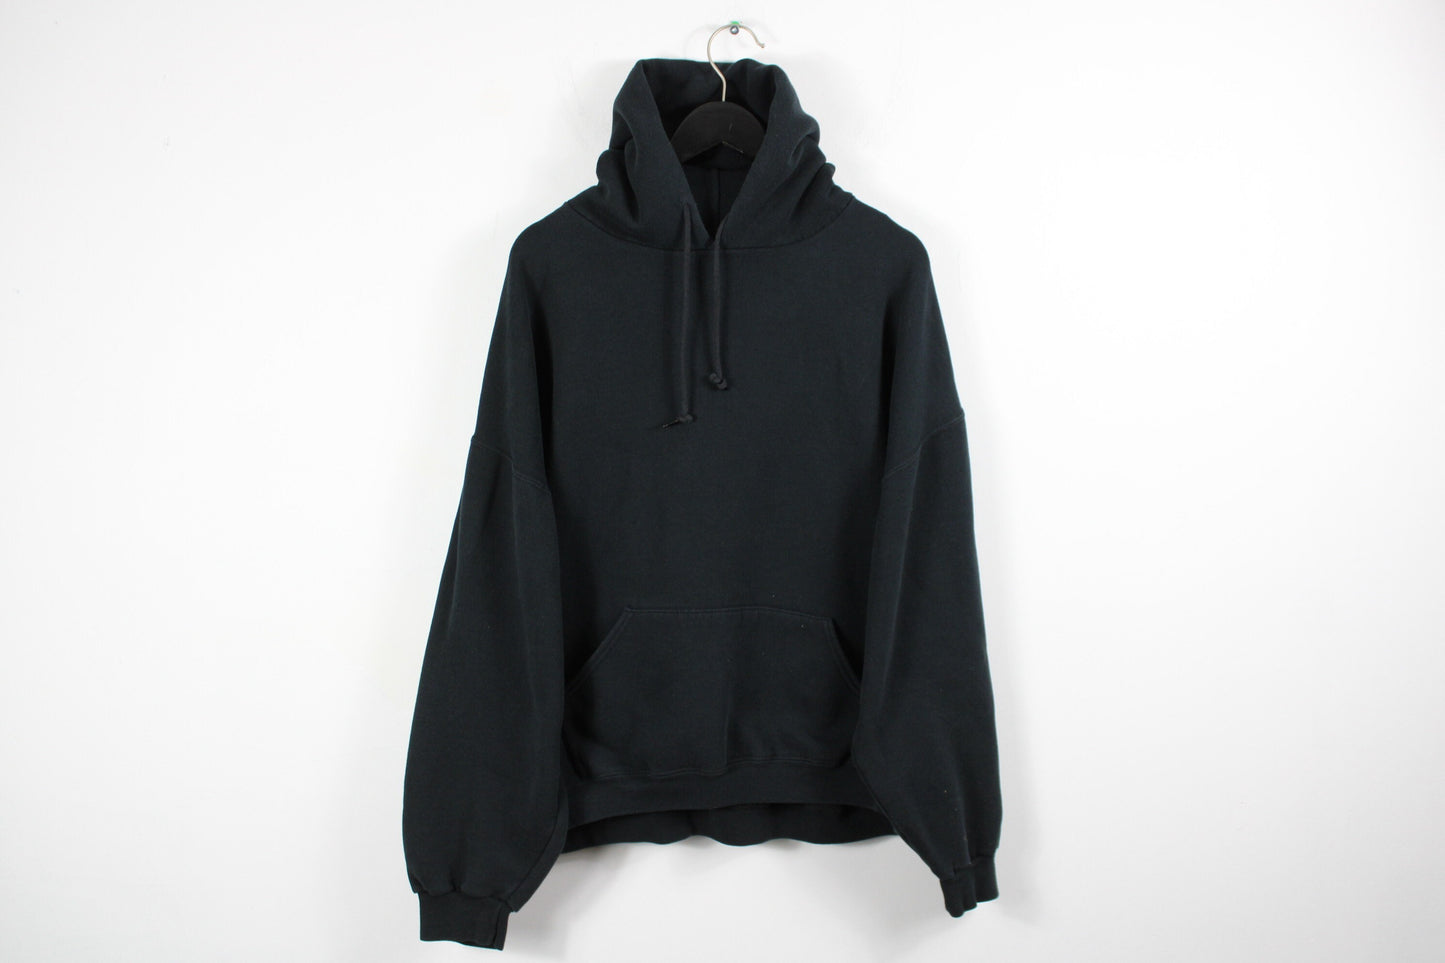 Russell Hooded Sweater / Vintage Blank Black Athletic Hoodie Sweatshirt / Pullover Promo Hoody / 90s Hip Hop Clothing / Streetwear